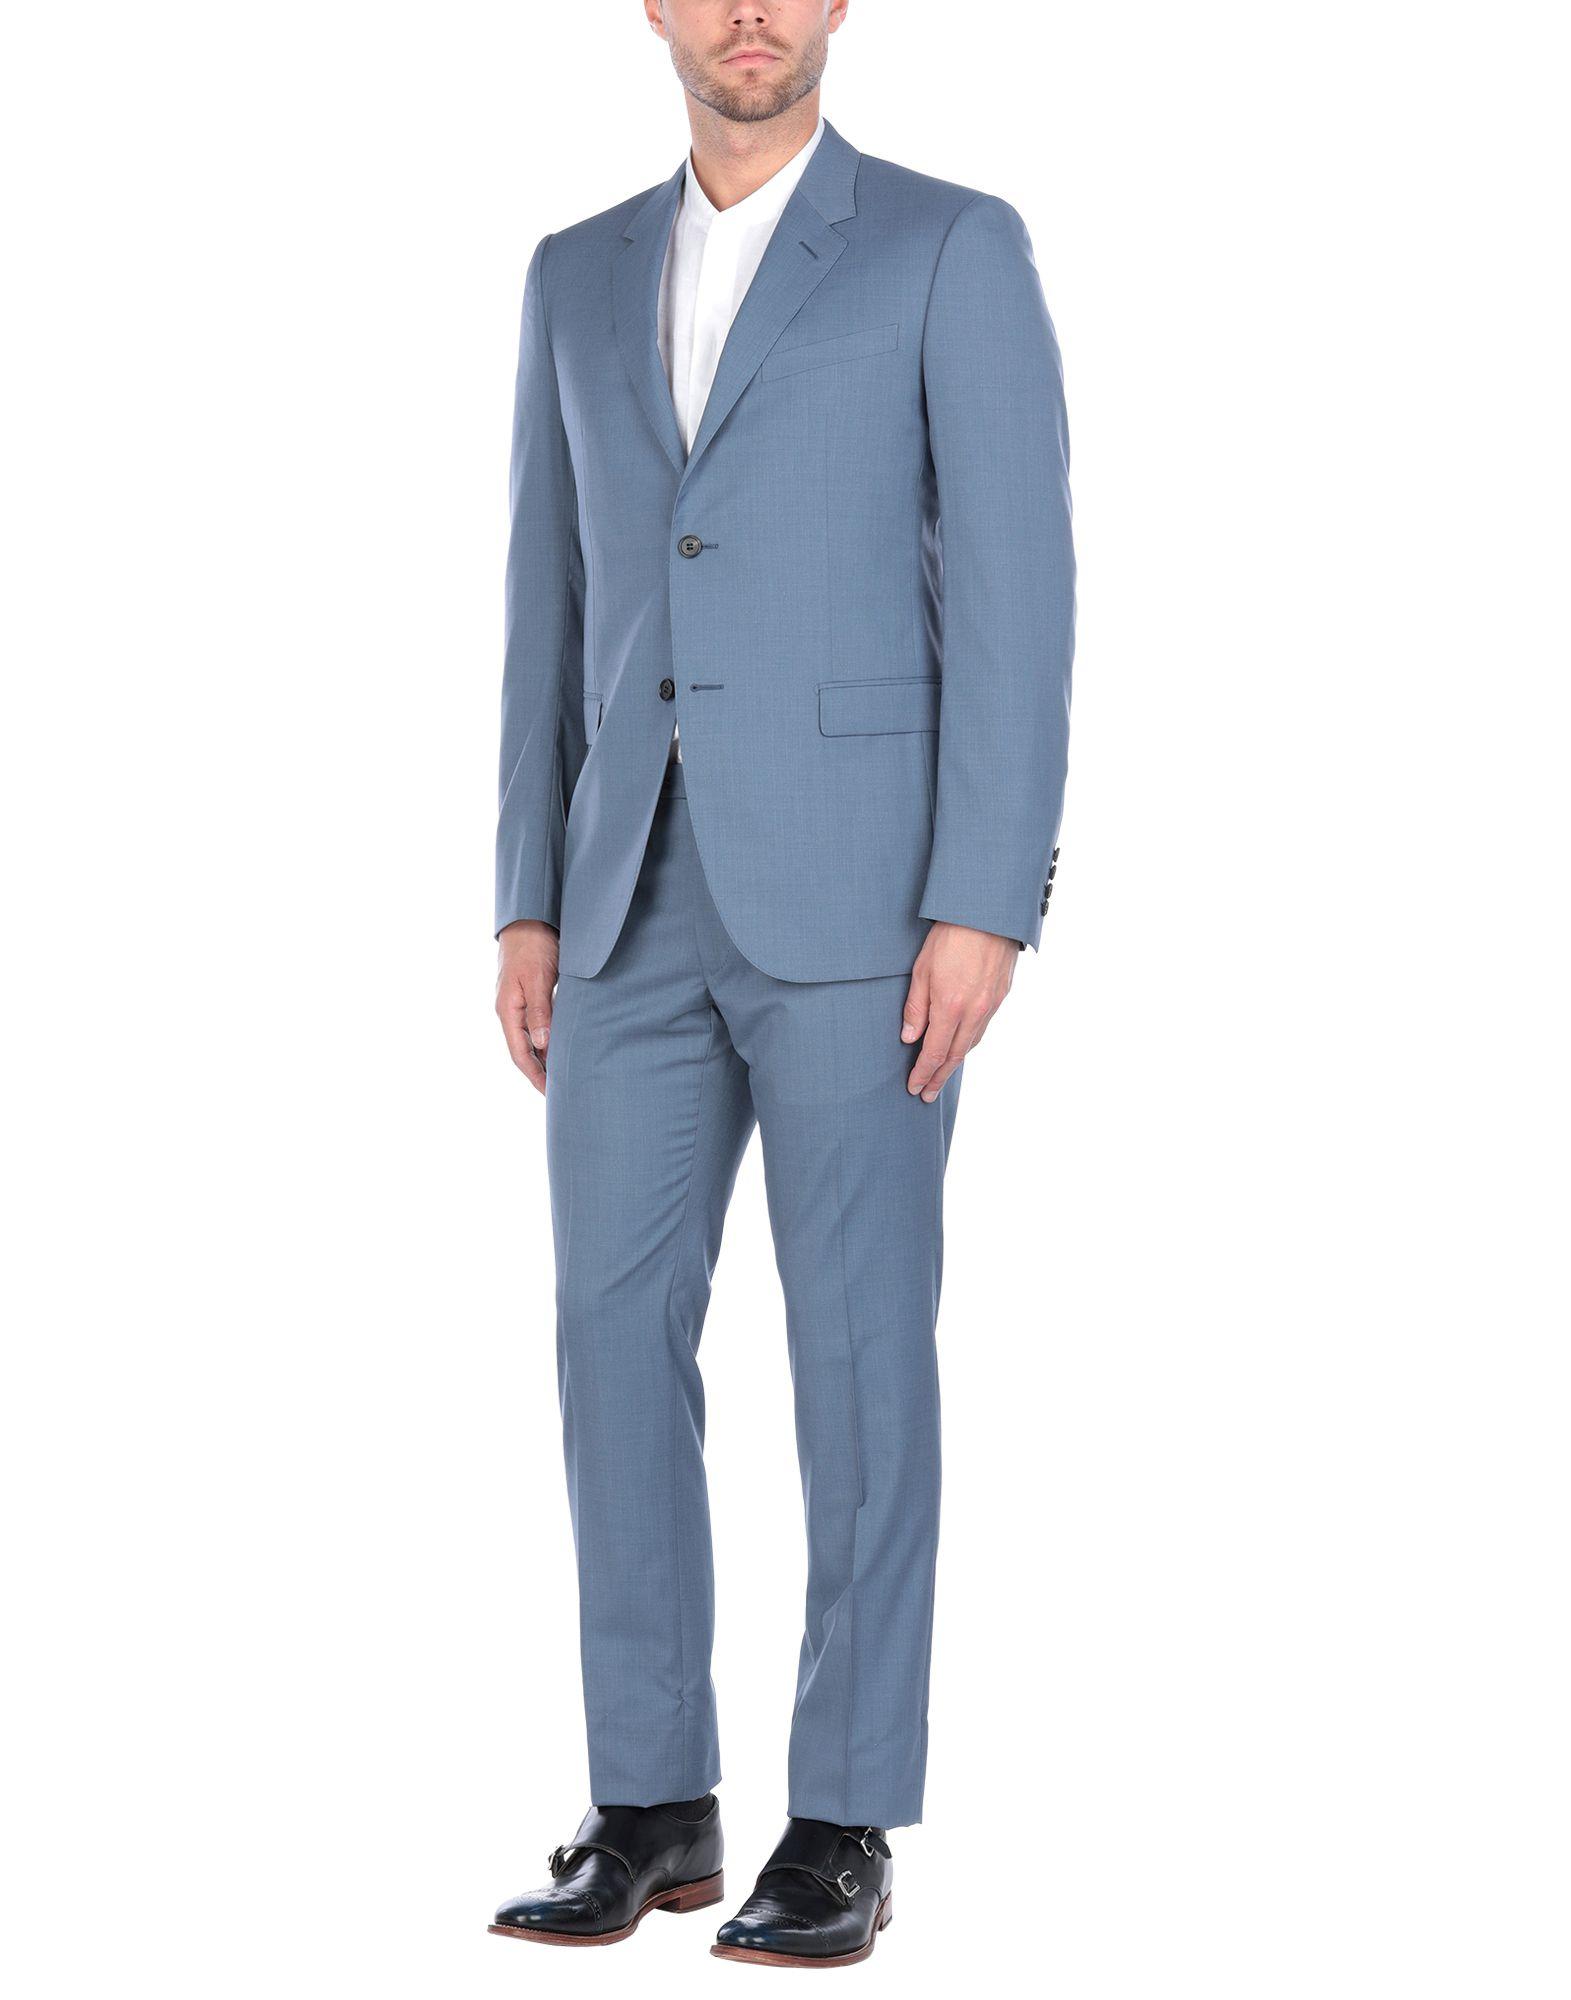 Lanvin Wool Suit in Slate Blue (Blue) for Men - Lyst